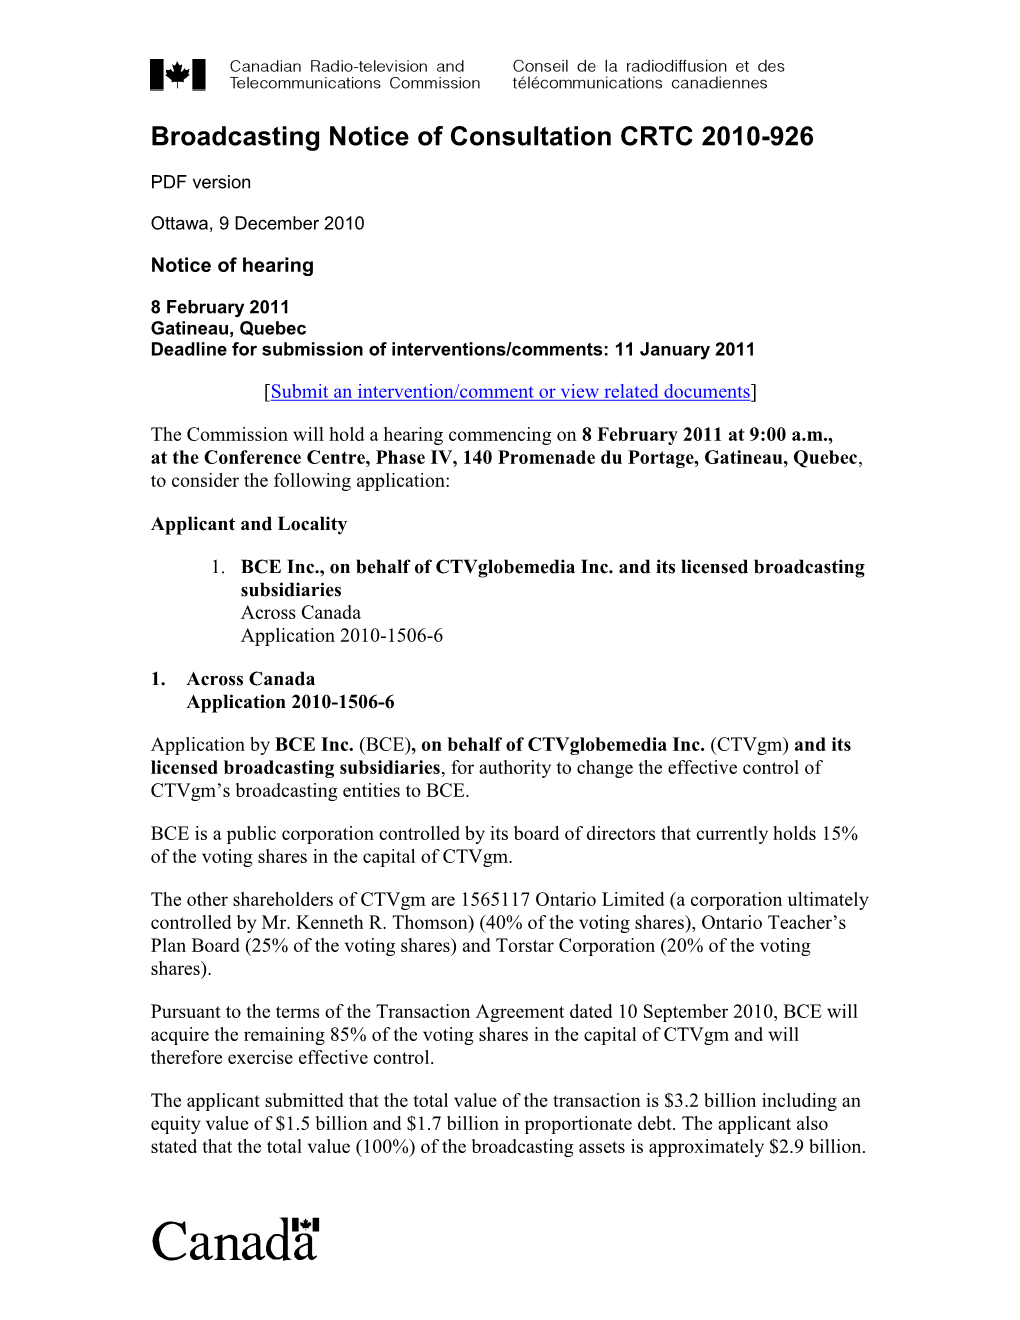 Broadcasting Notice of Consultation CRTC 2010-926